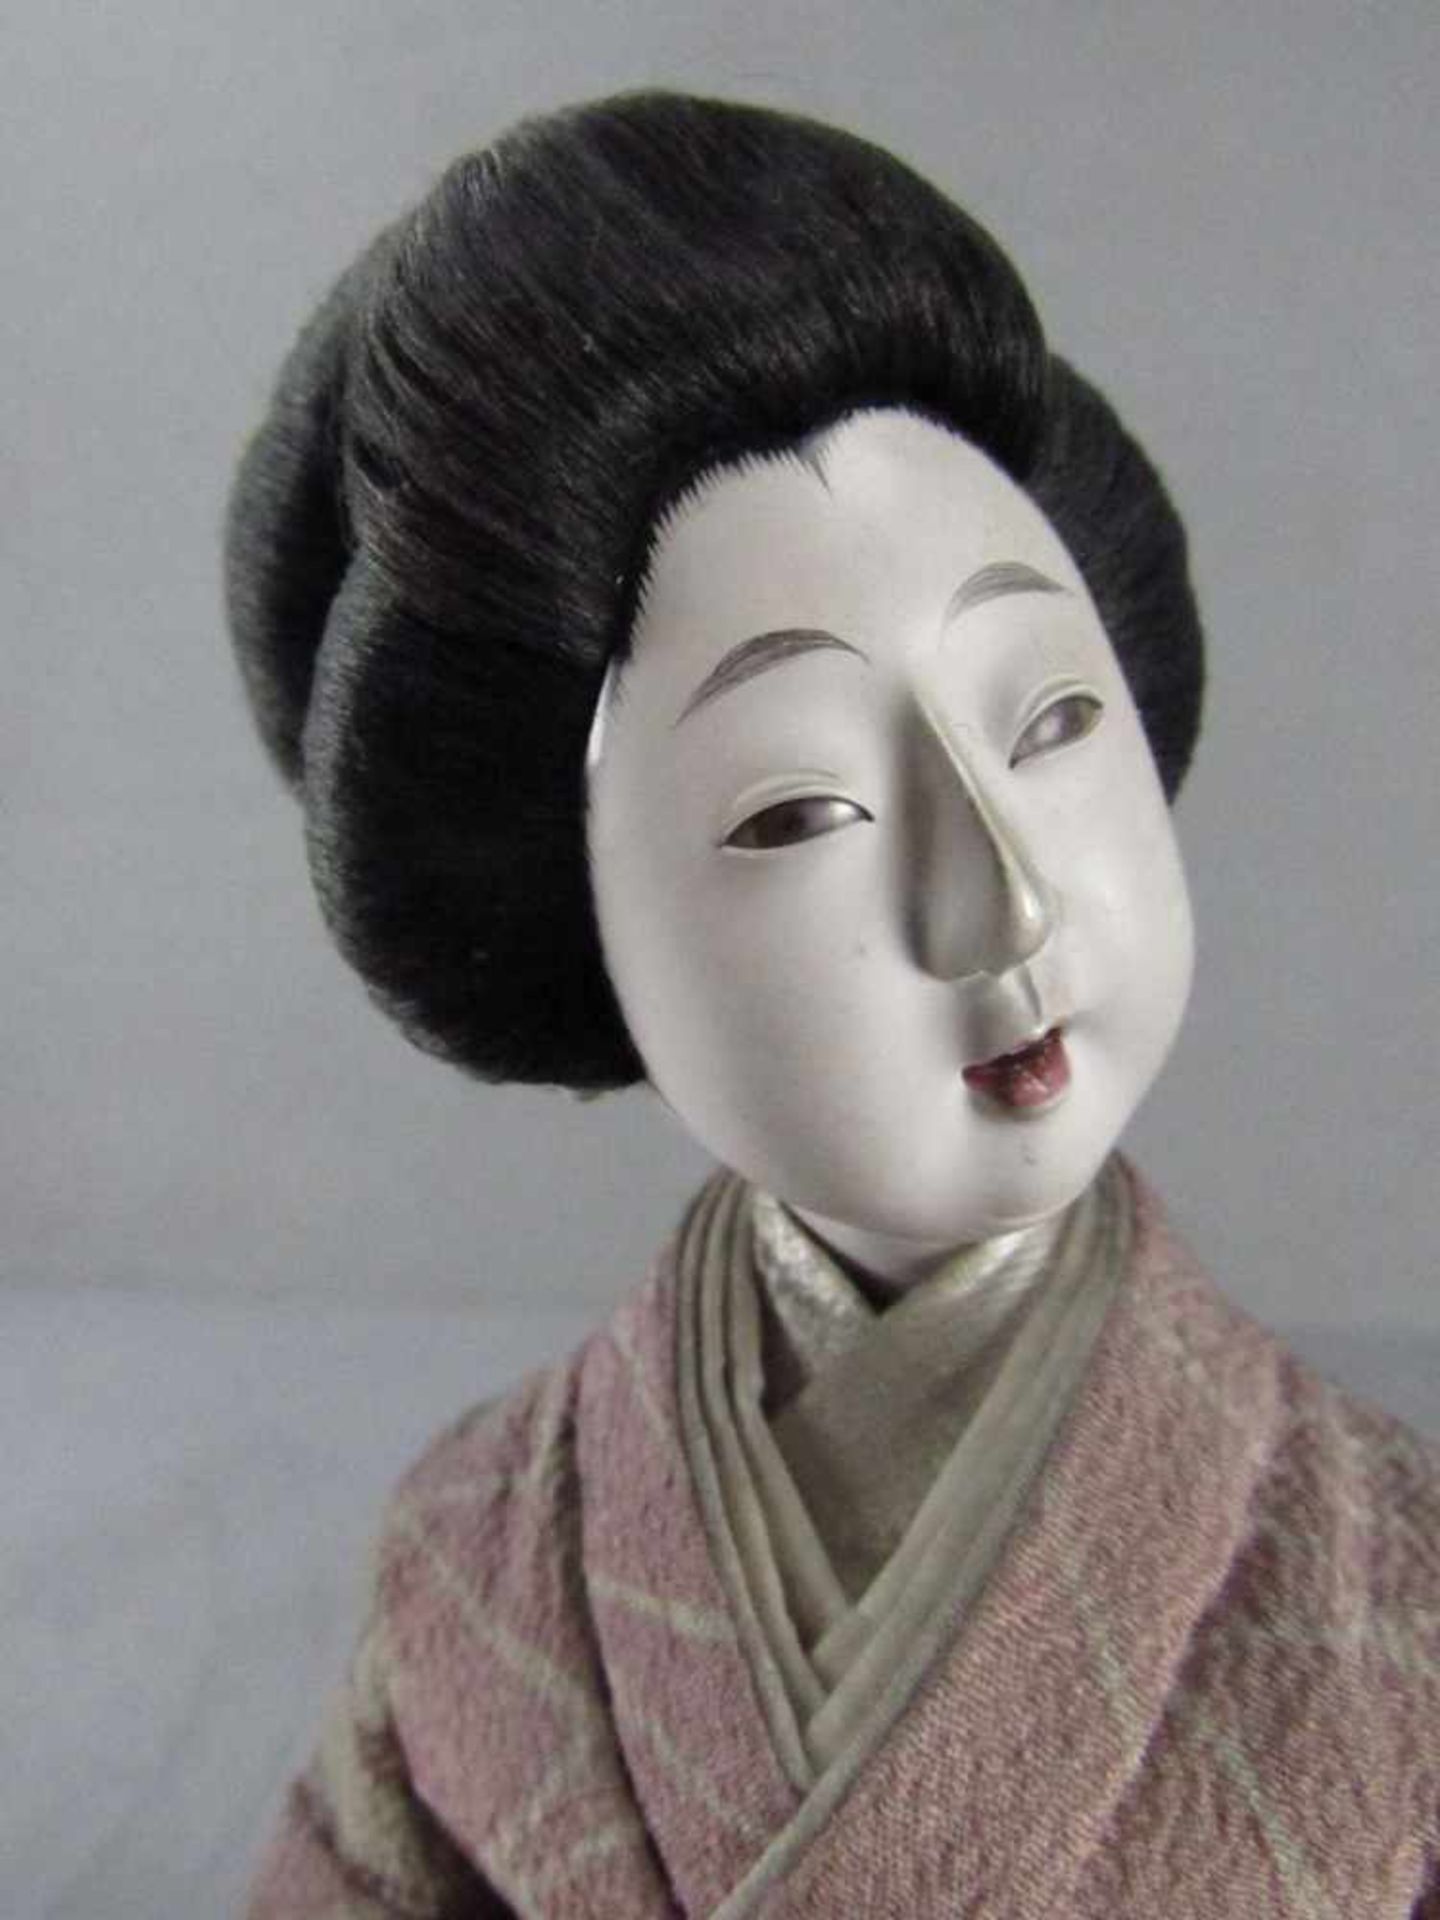 Japanische Puppe auf Sockel Geisha sehr fein gearbeitet 20. Jahrhundert 29cm hoch - Bild 5 aus 5